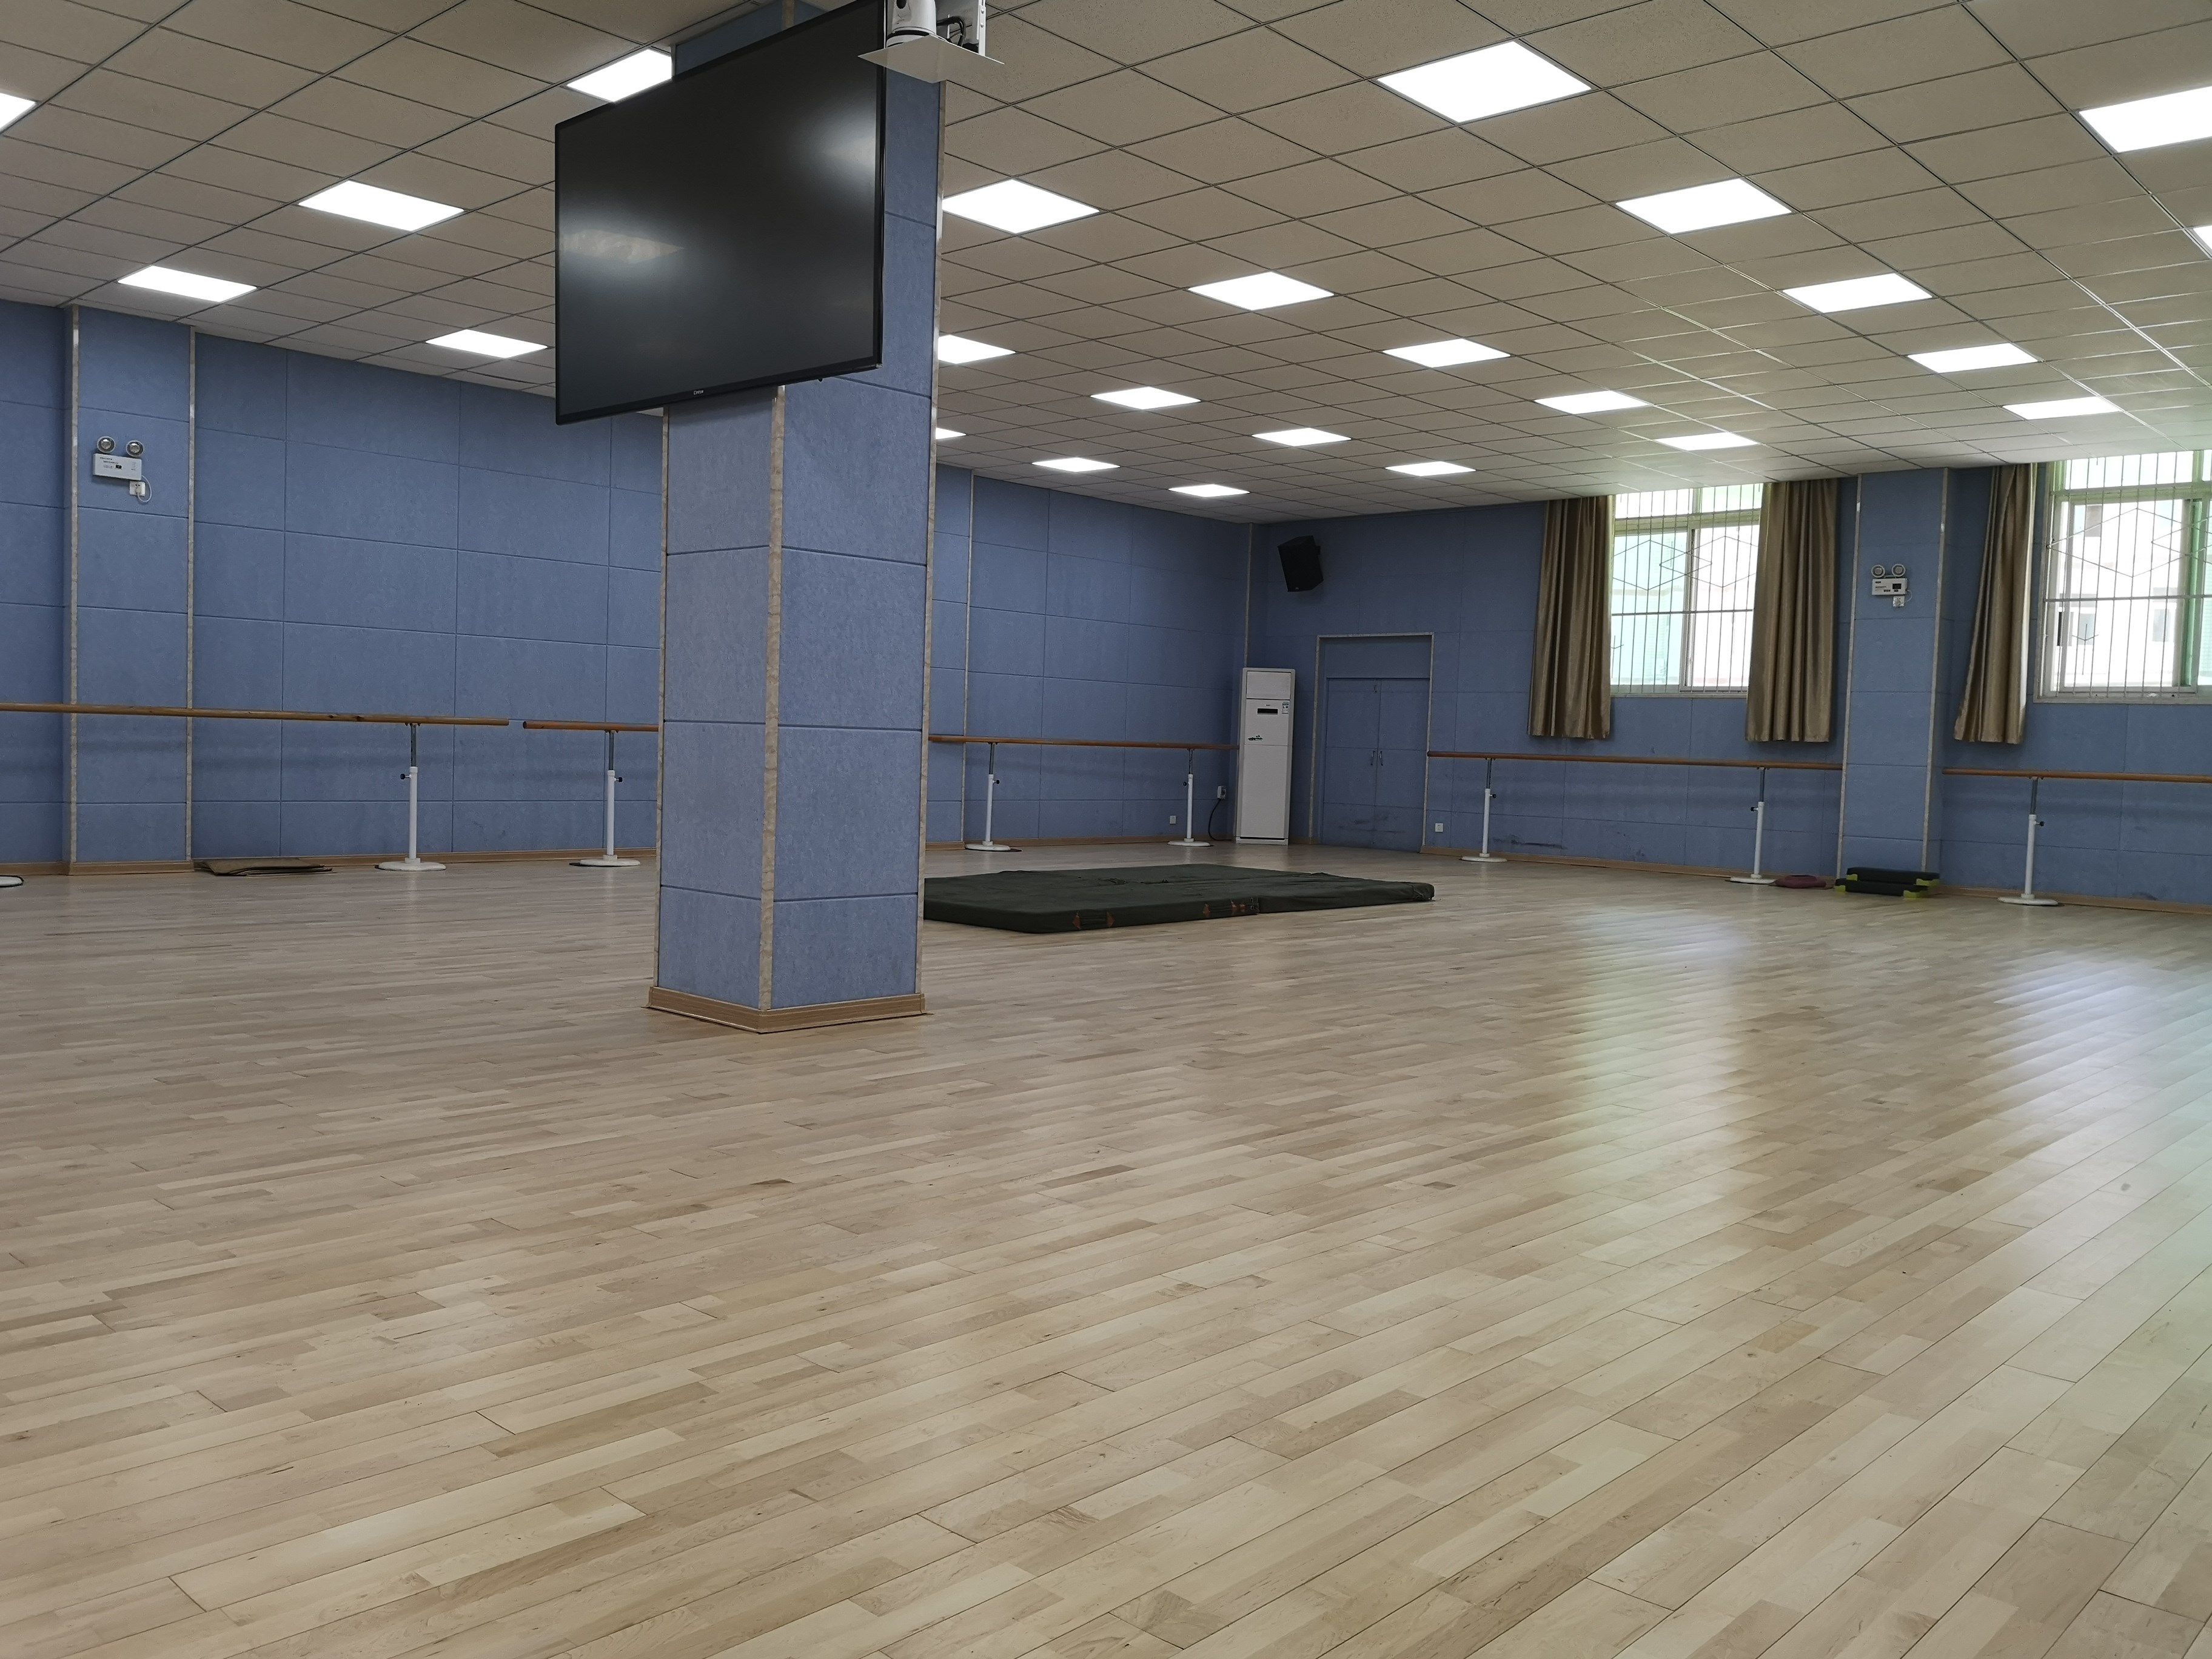 內蒙古民族藝術學院舞蹈室木地板整體鋪設